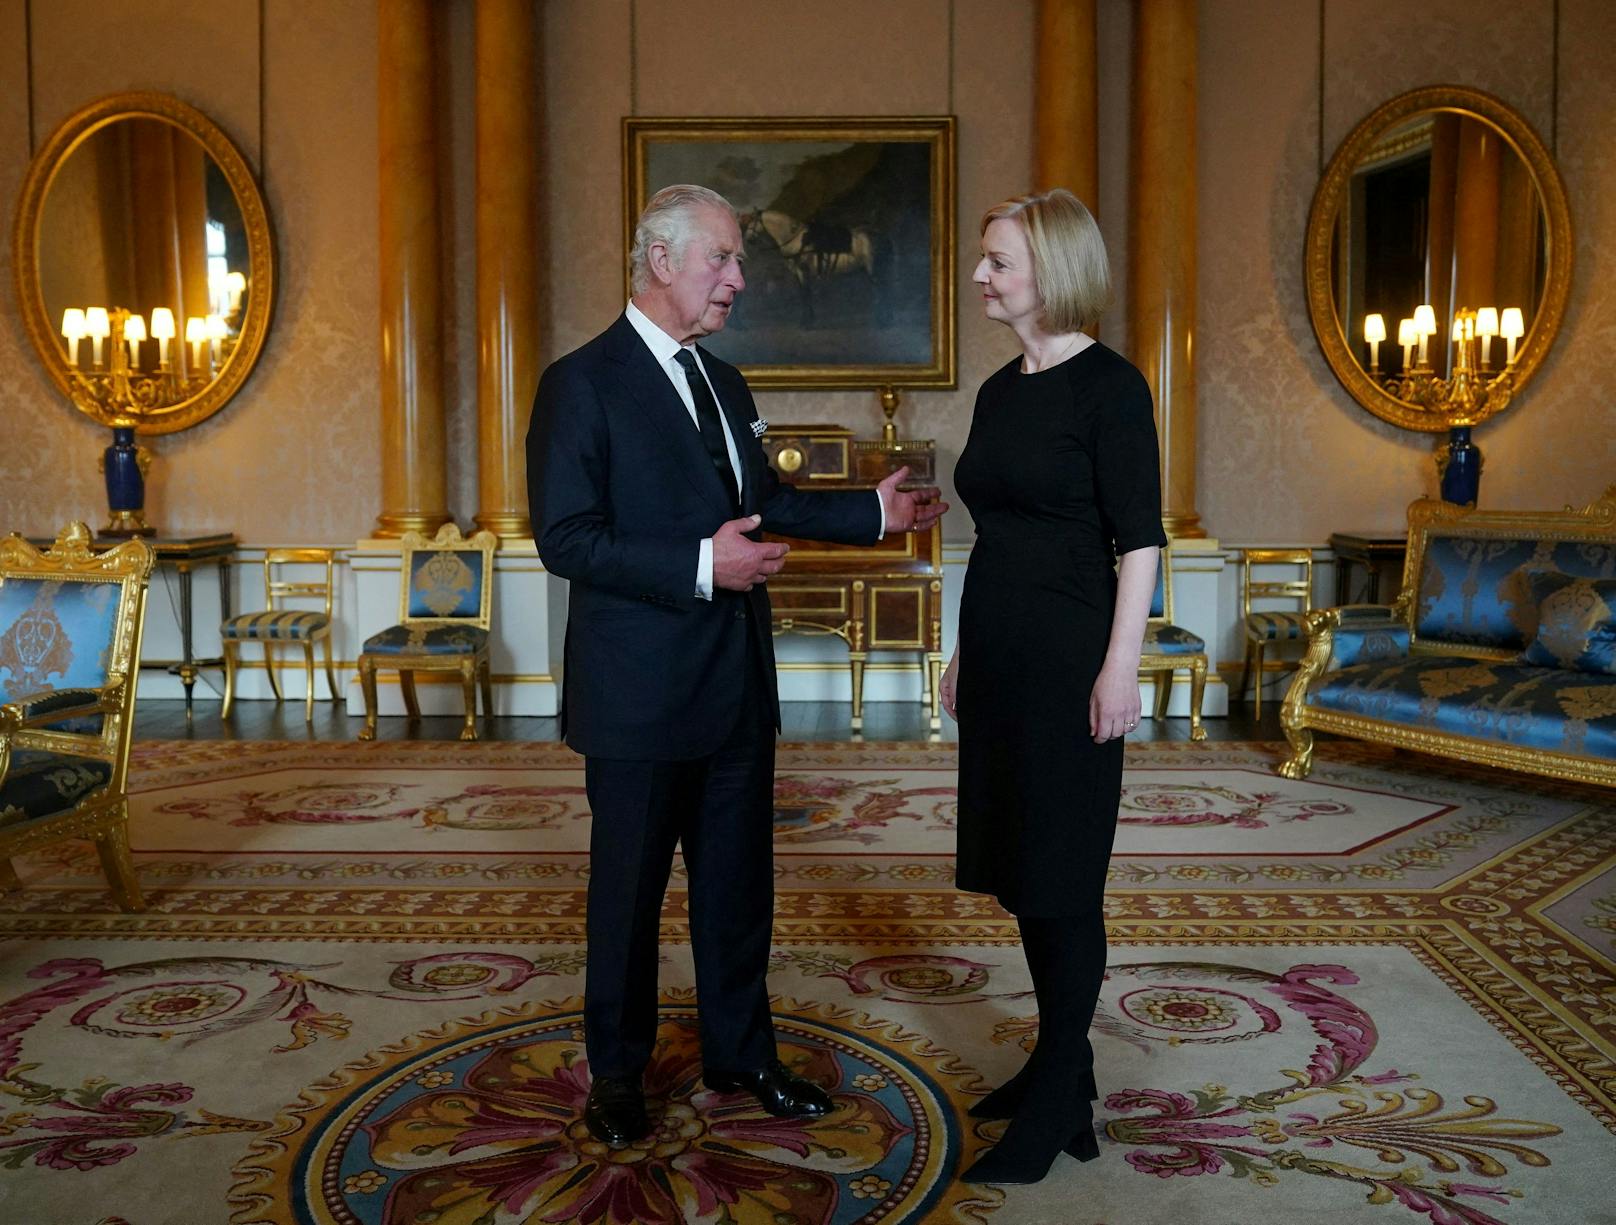 Doch er kann auch ernst sein: König Charles III. im Gespräch mit der Premierministerin Liz Truss.